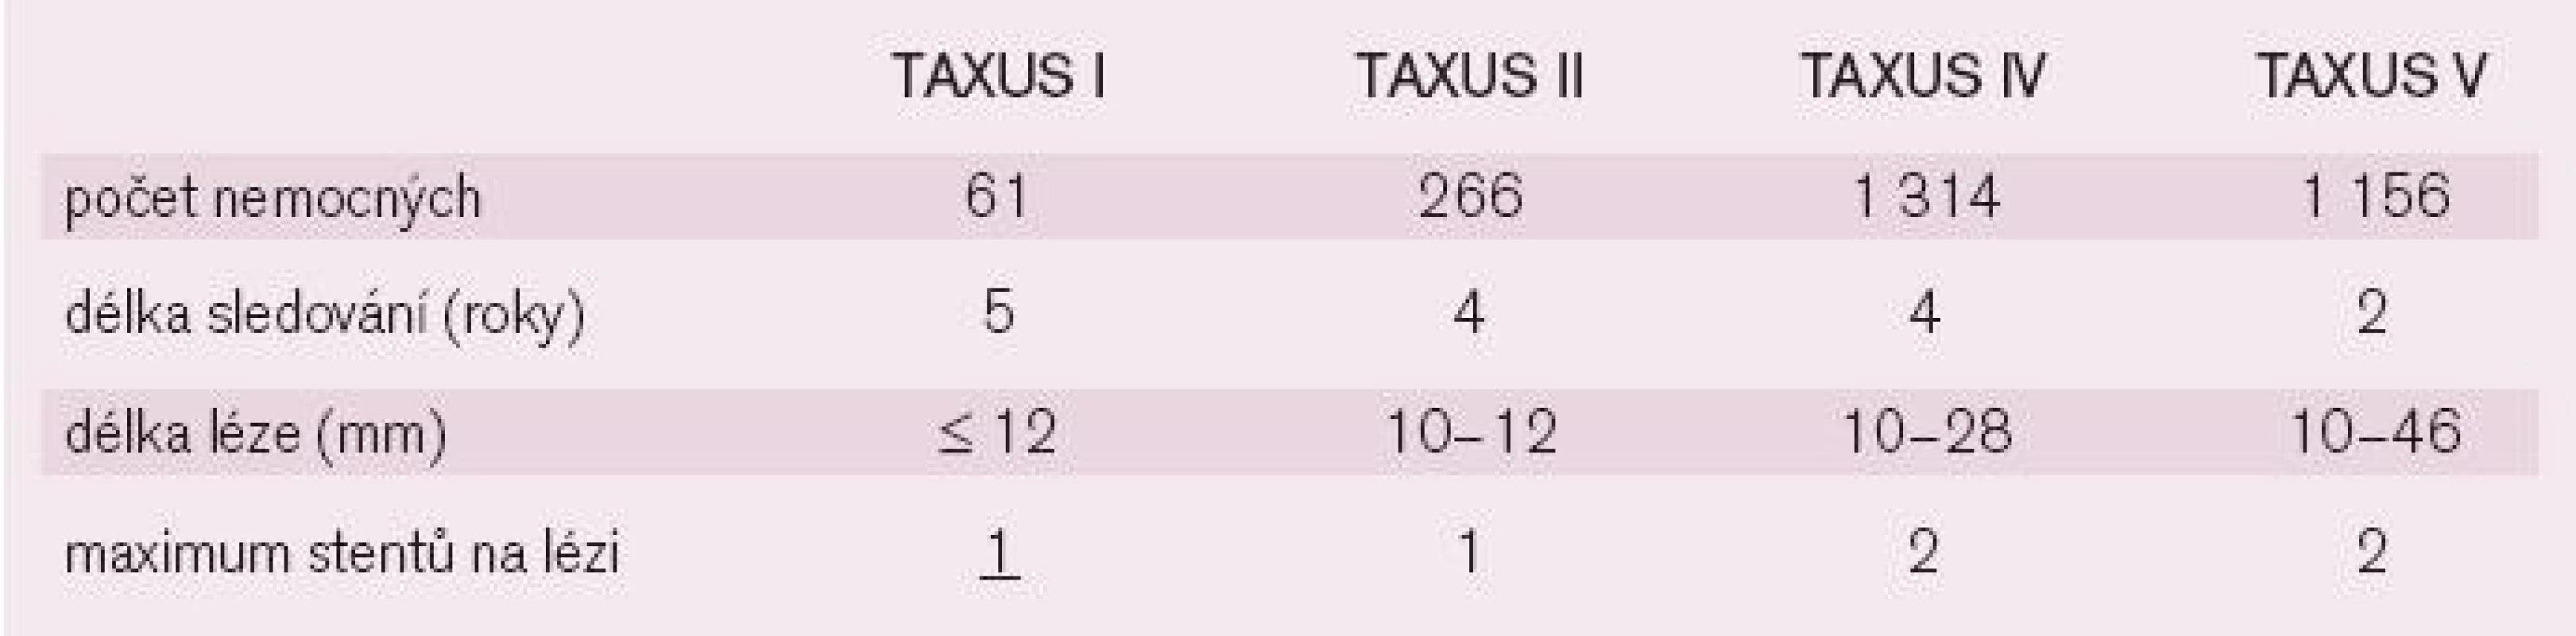 TAXUS (DES potahovaný paklitaxelem) studie.